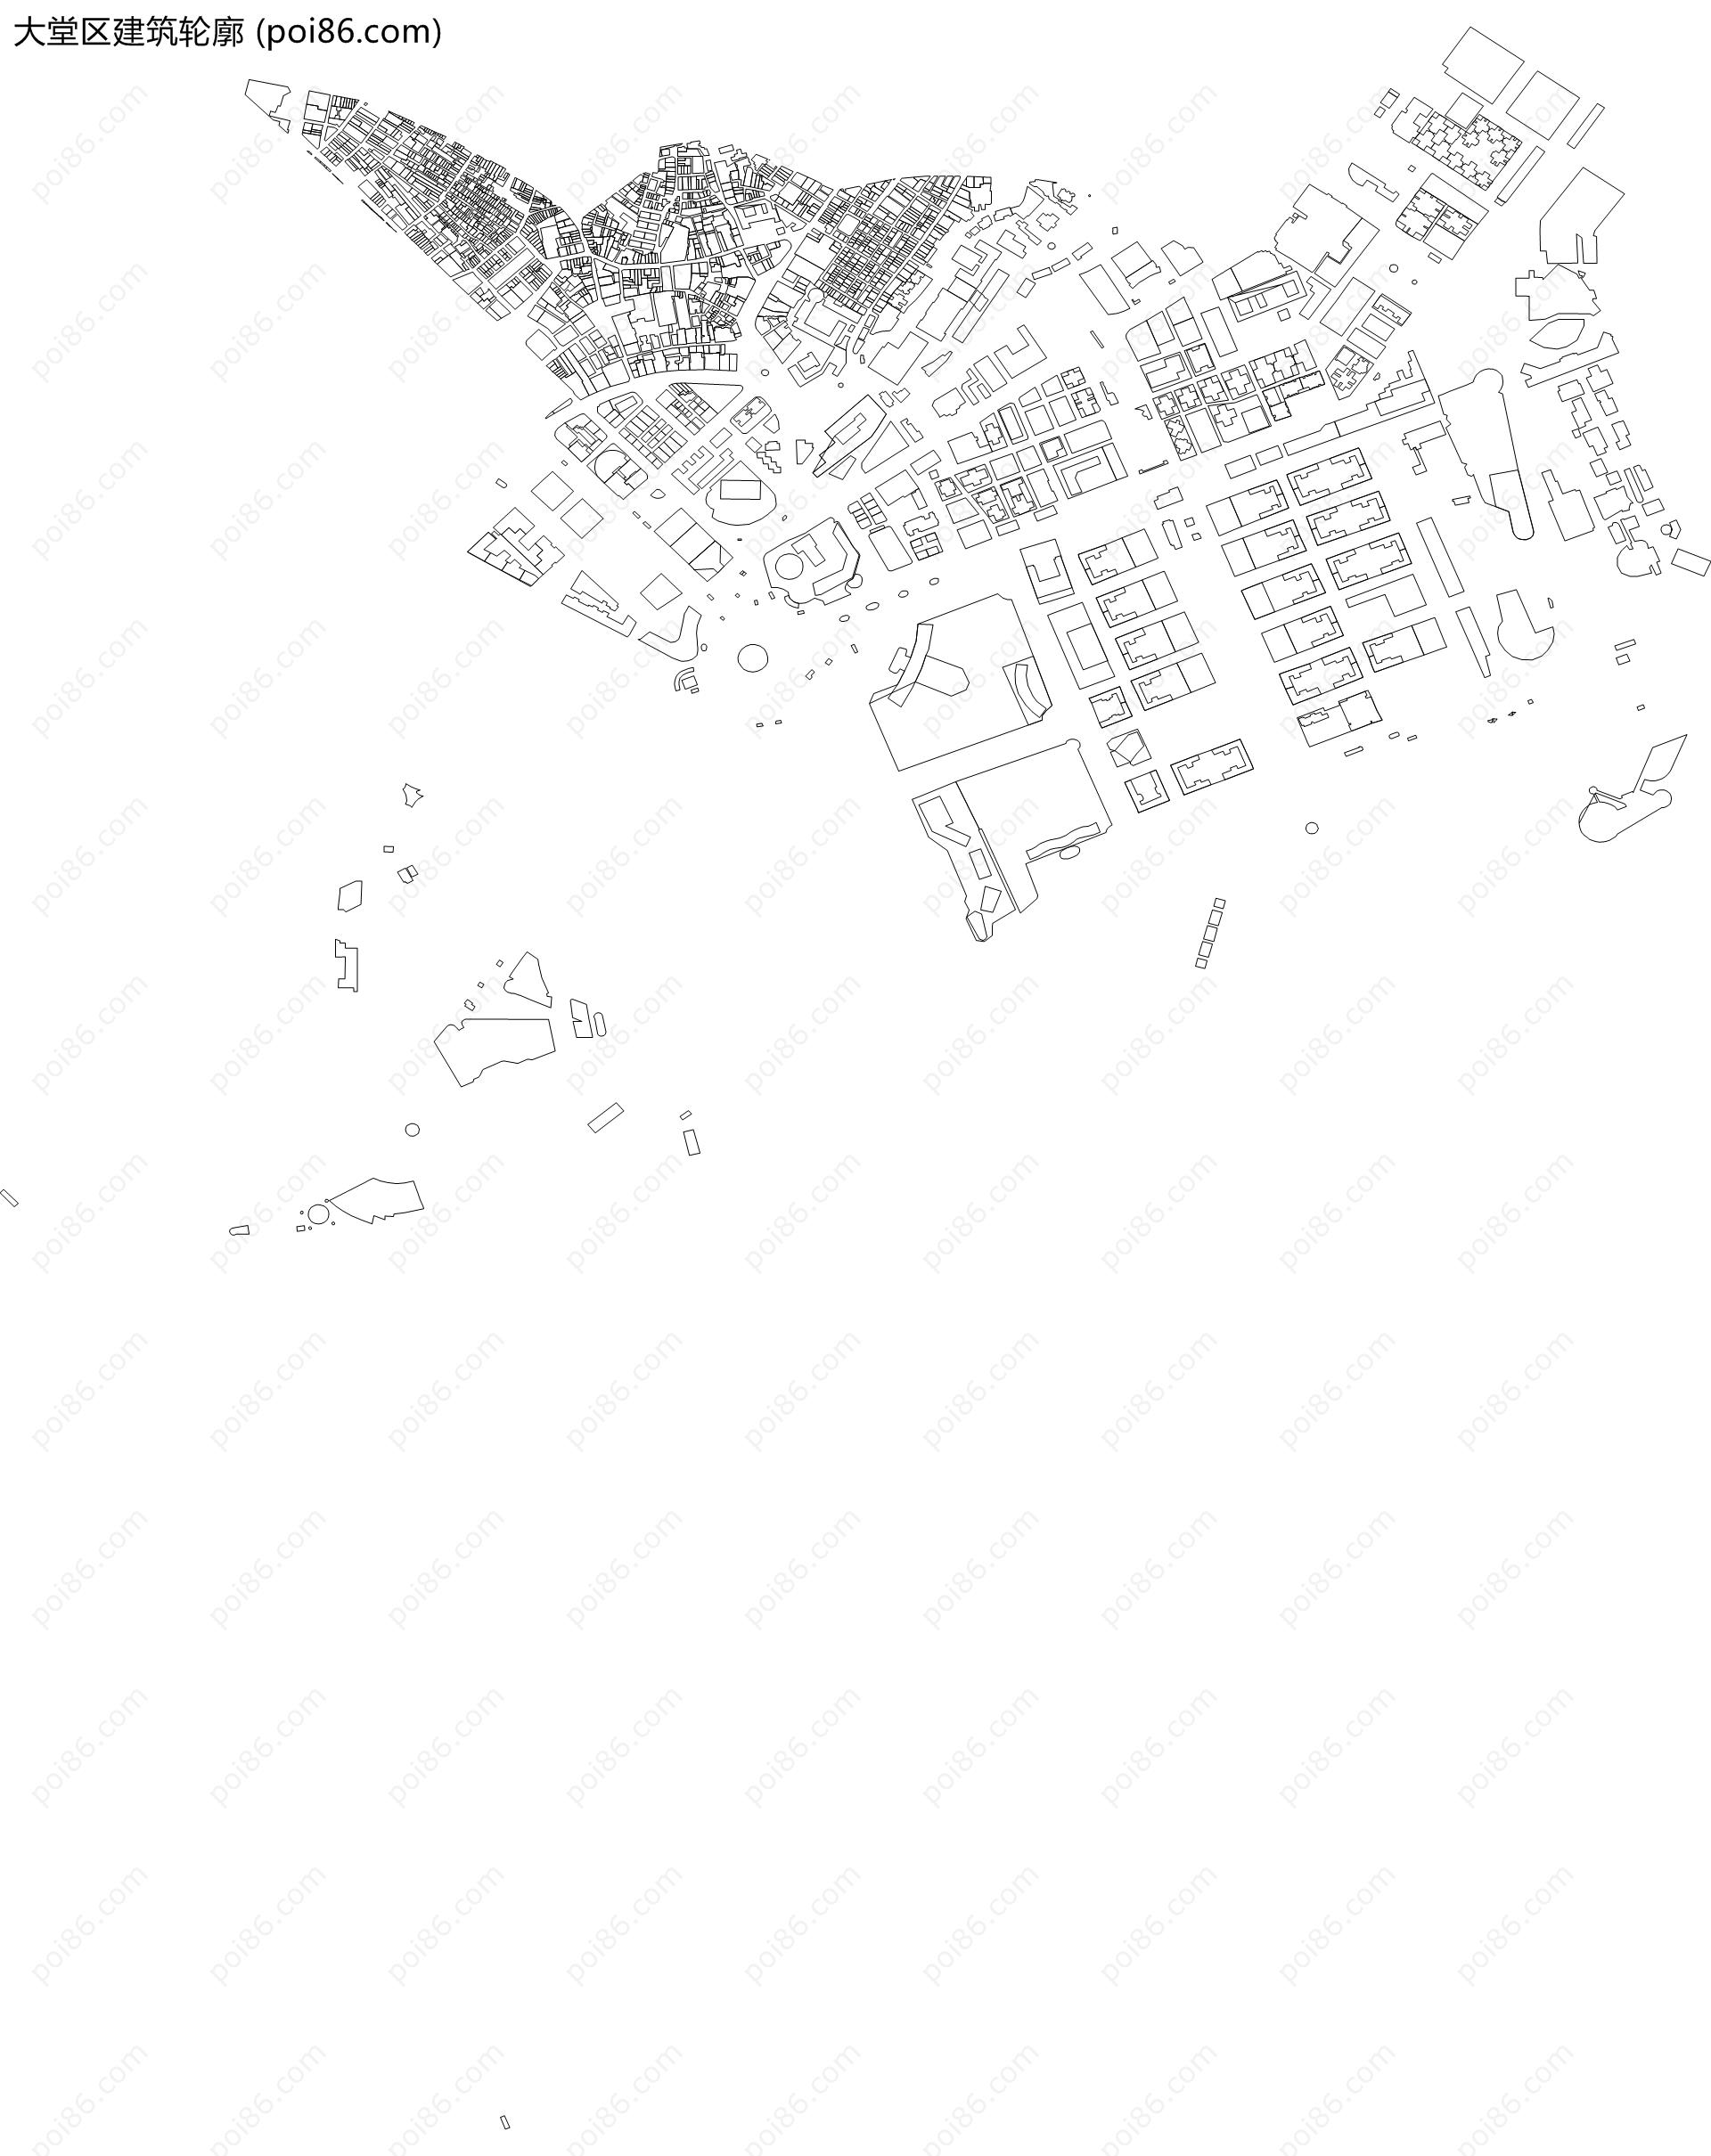 大堂区建筑轮廓地图